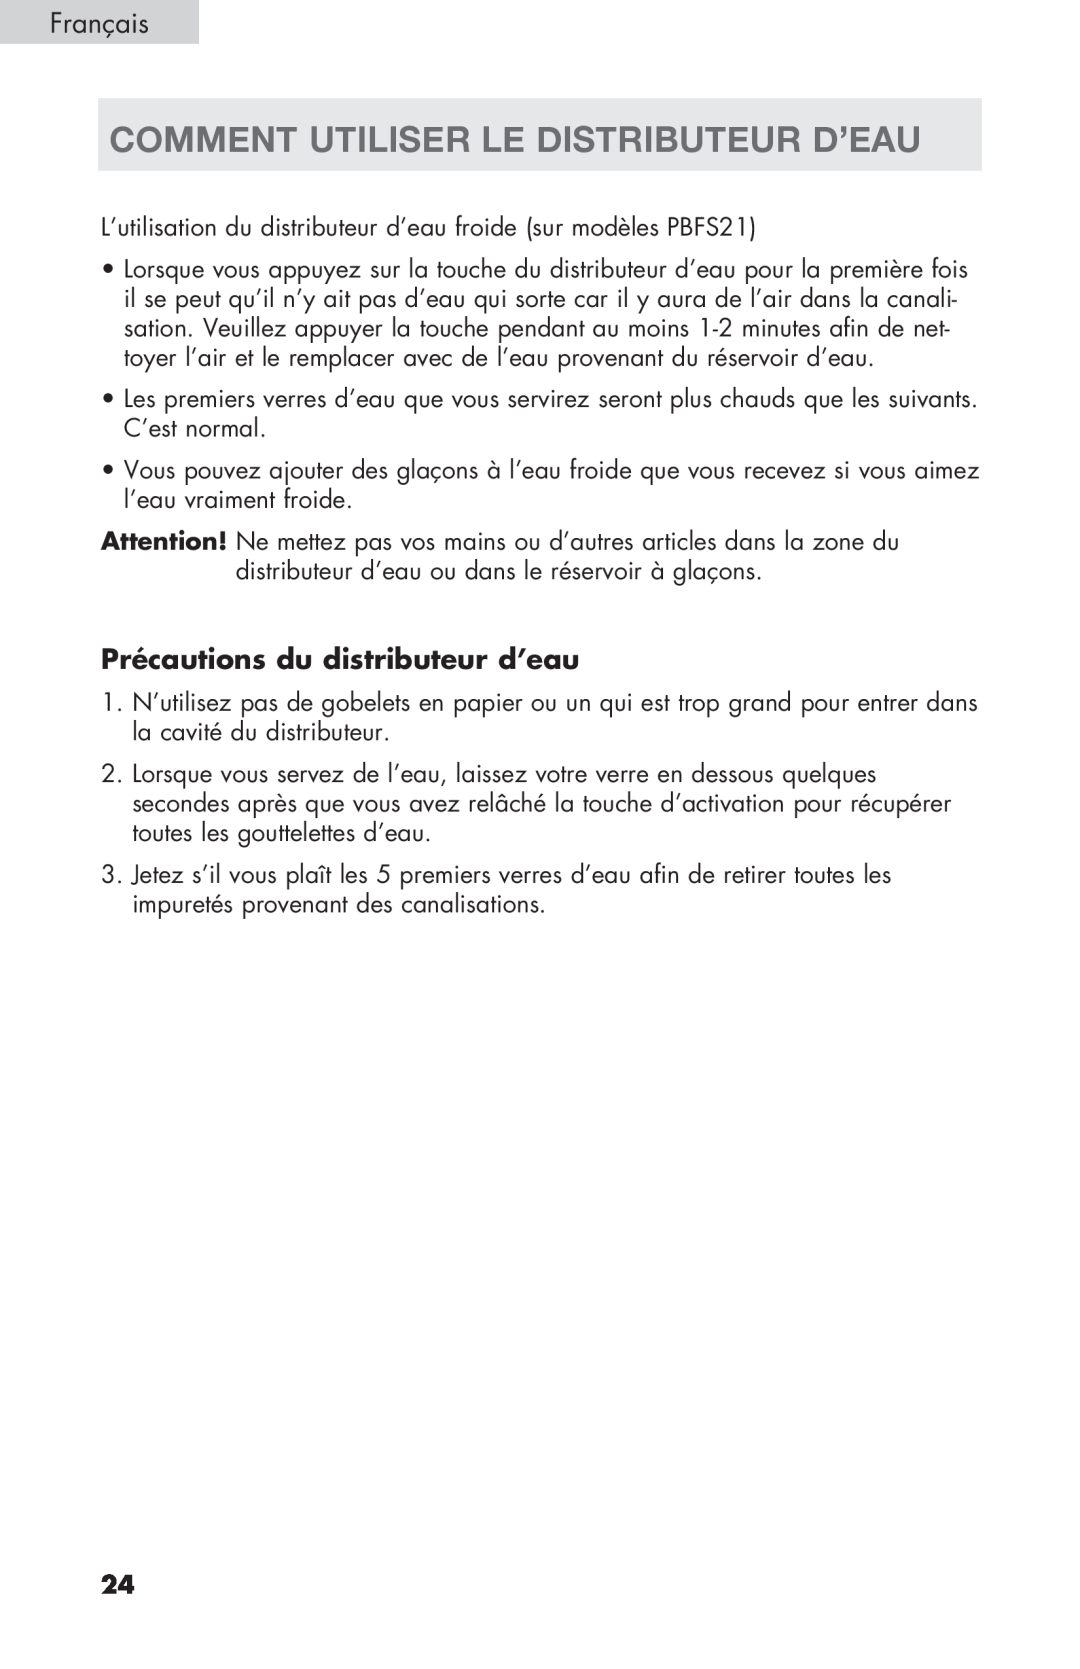 Haier PRFS25 user manual Comment Utiliser Le Distributeur D’Eau, Précautions du distributeur d’eau 